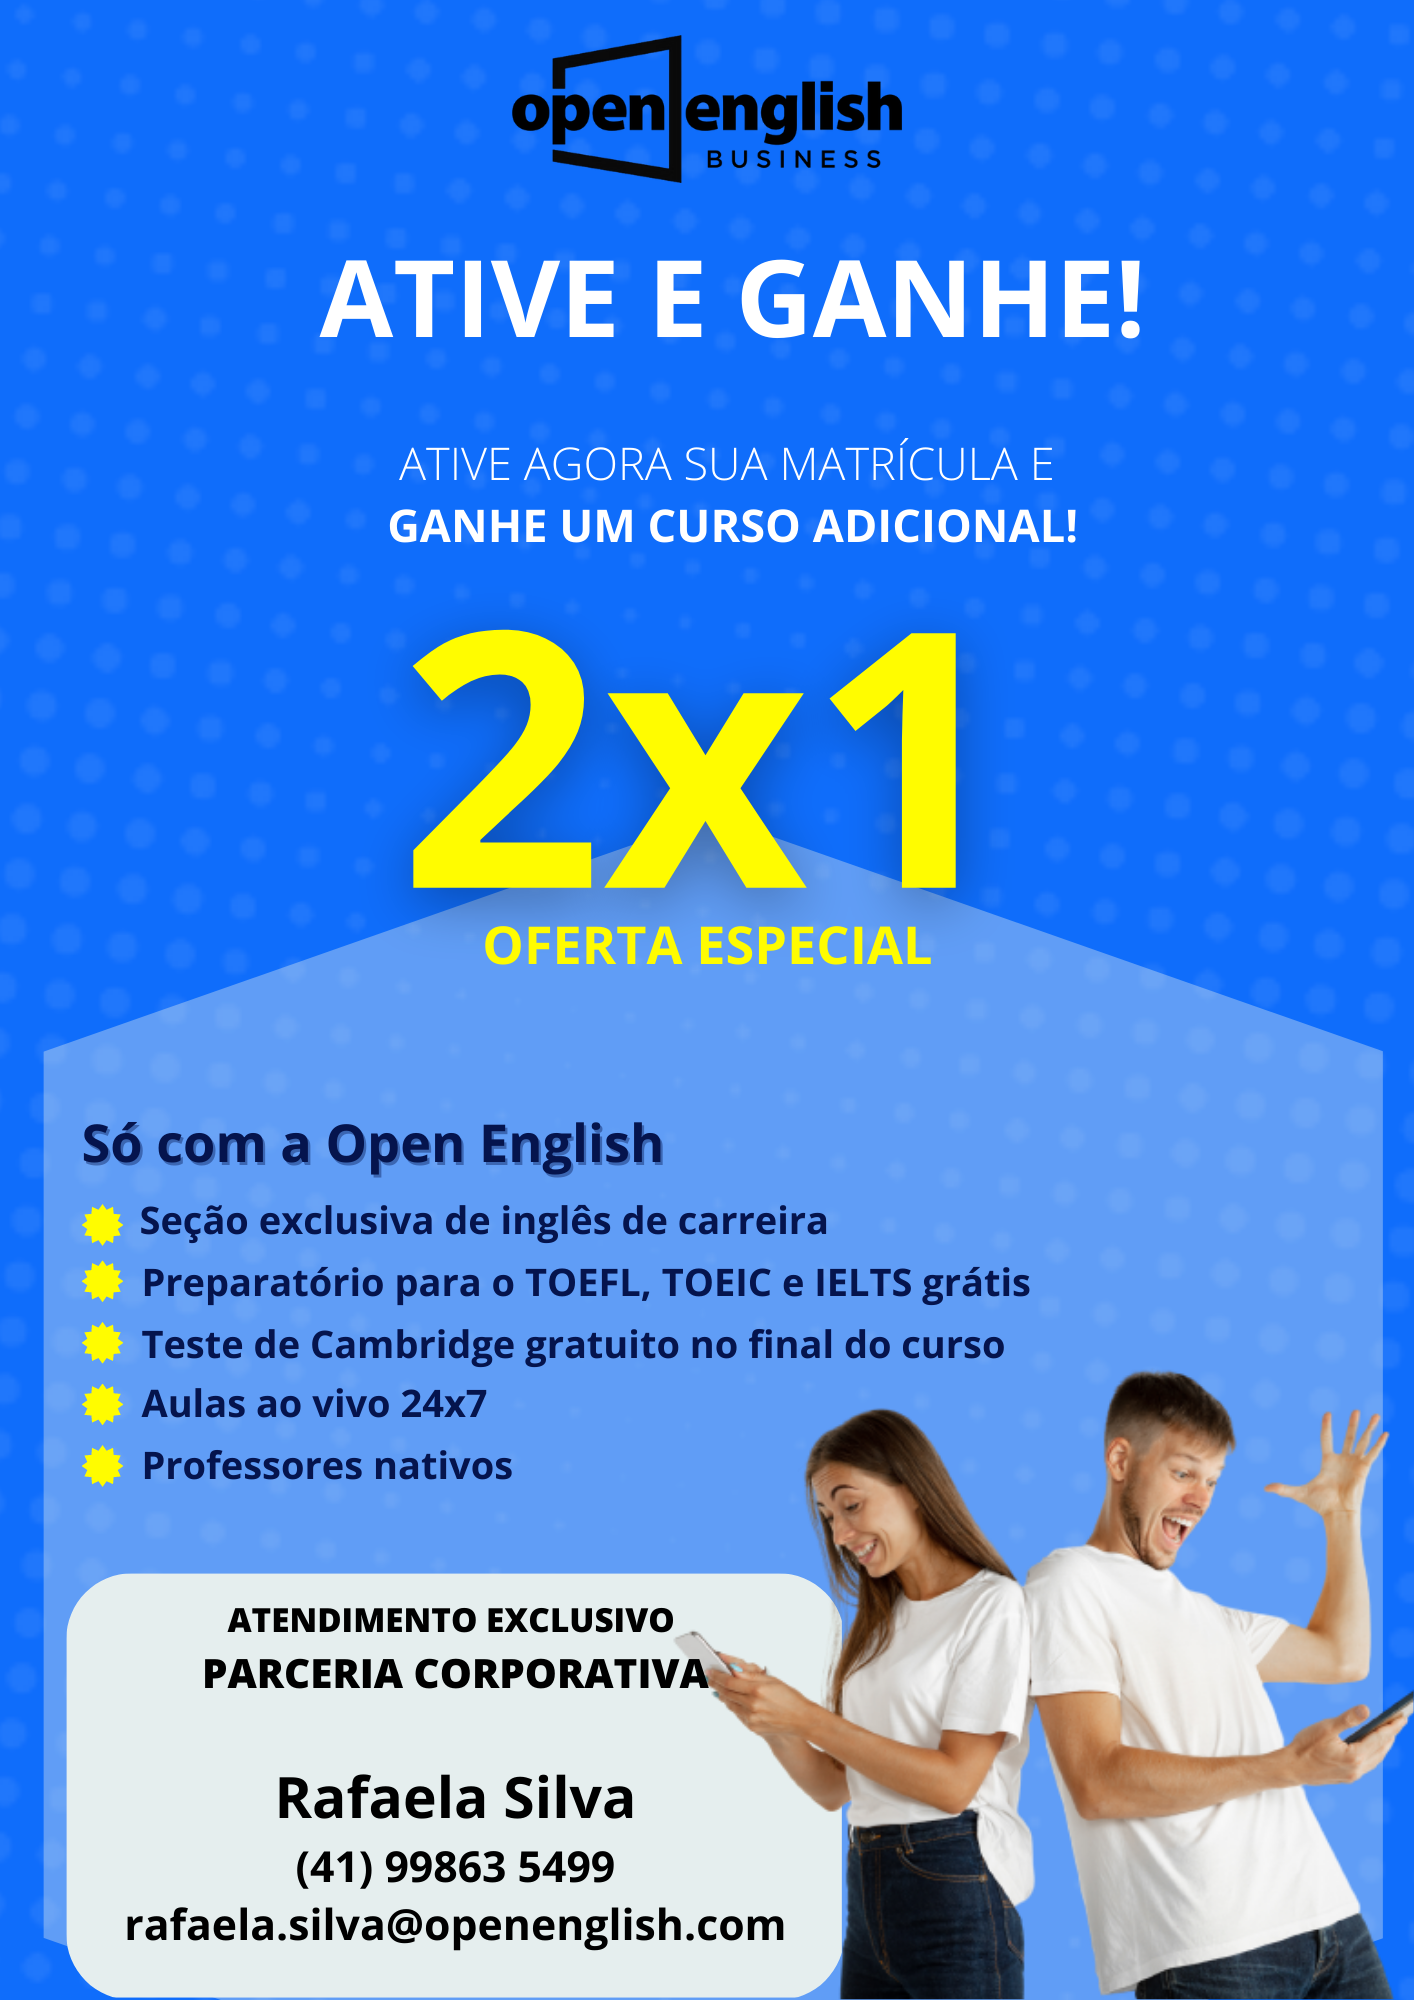 OPEN ENGLISH PREÇO 2 POR 1 🚨 Open English CUPOM DESCONTO VALIDO